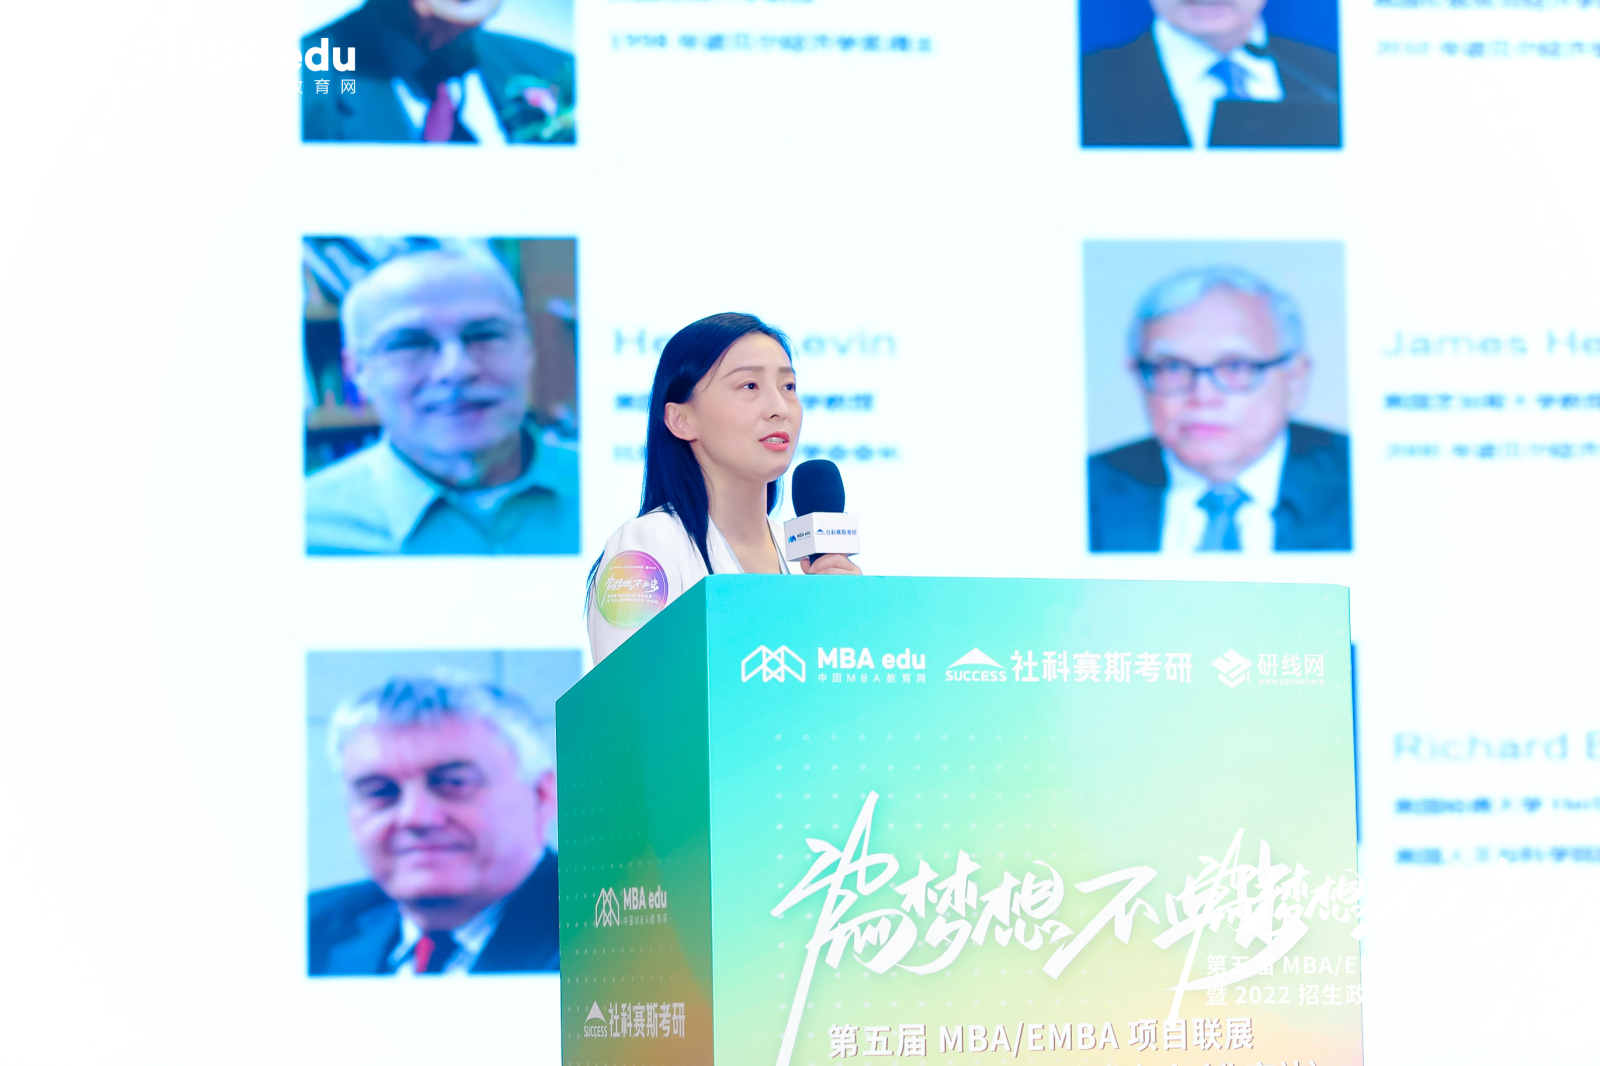 北京师范大学MBA教育中心应邀出席第五届MBA项目联展（北京站）